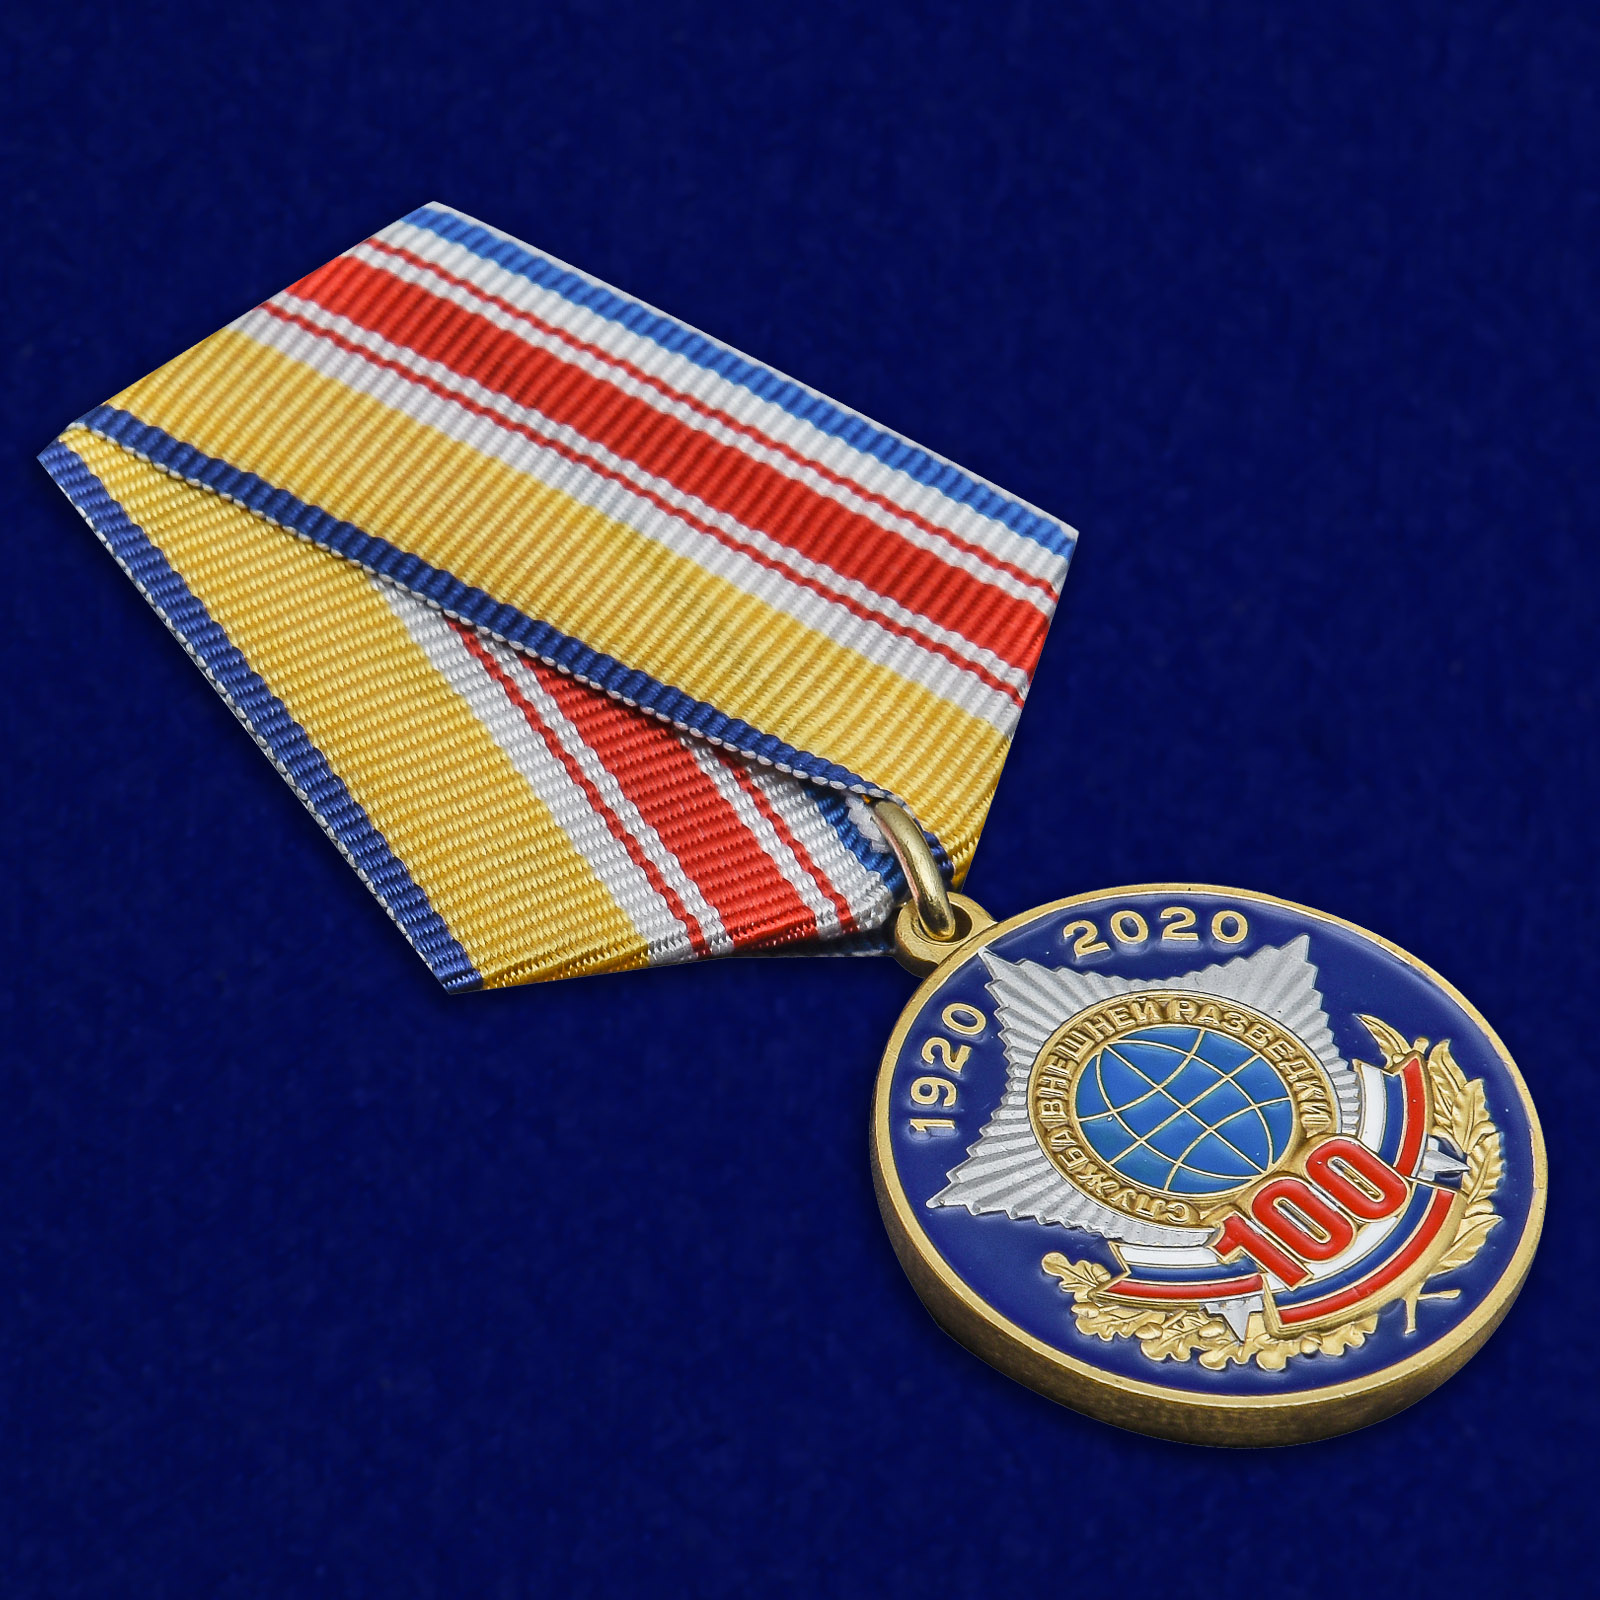 Медаль "100 лет Службе внешней разведке"